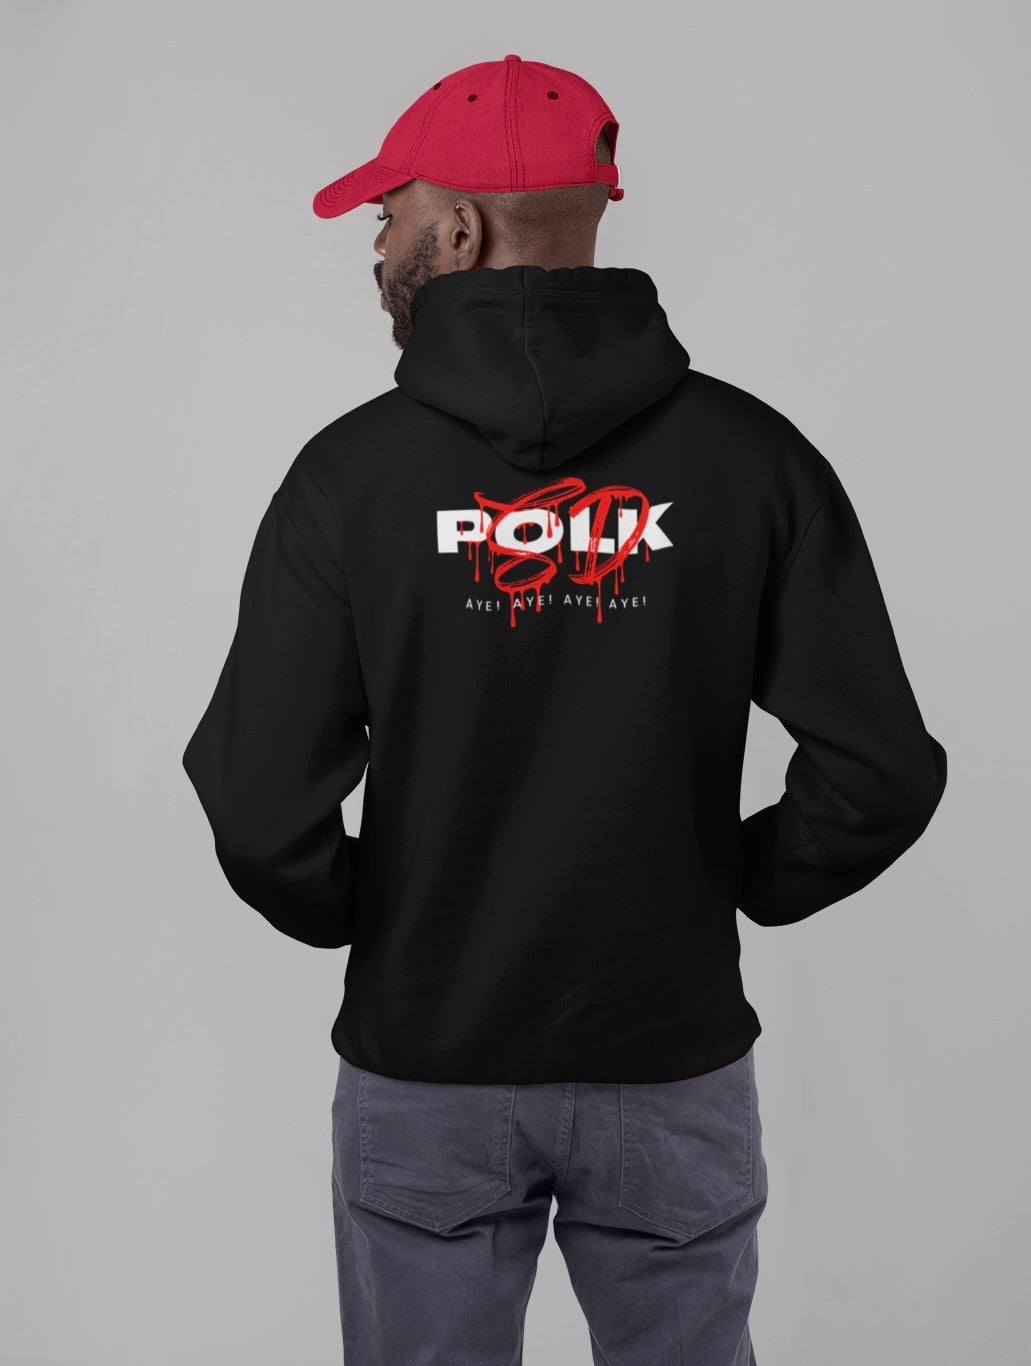 Black polksd hoodie